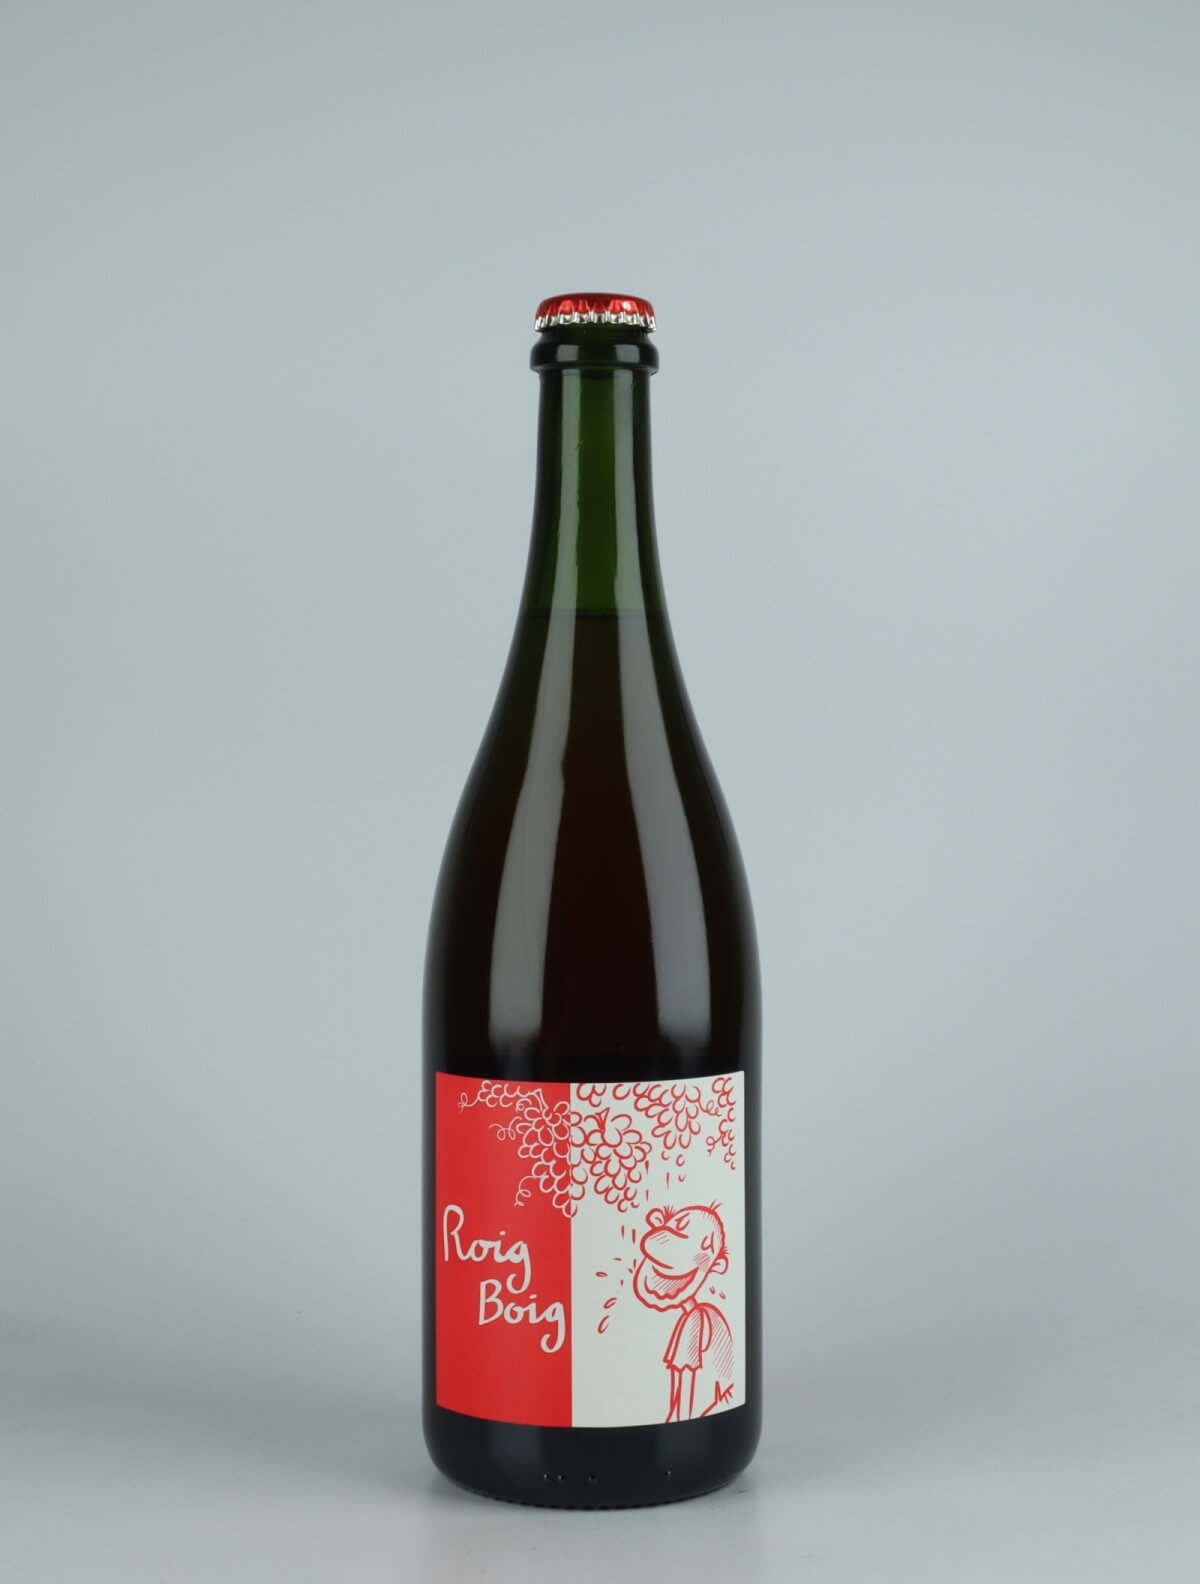 A bottle 2021 Roig Boig - Ancestral Sparkling from Celler la Salada, Penedès in Spain